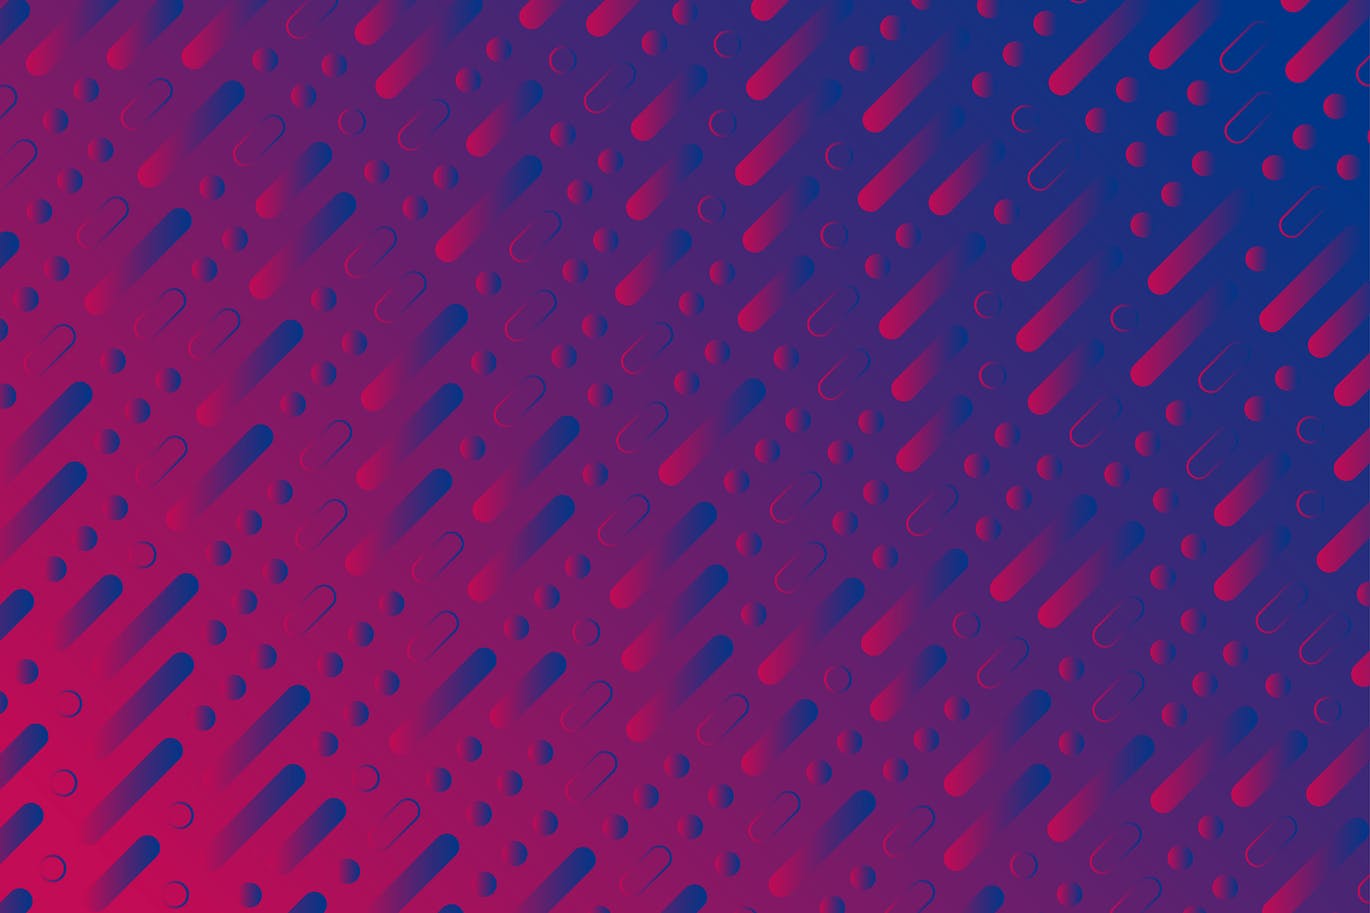 蓝紫色复古几何图形高清第一素材精选背景素材 Blue purple retro geometric minimal background插图